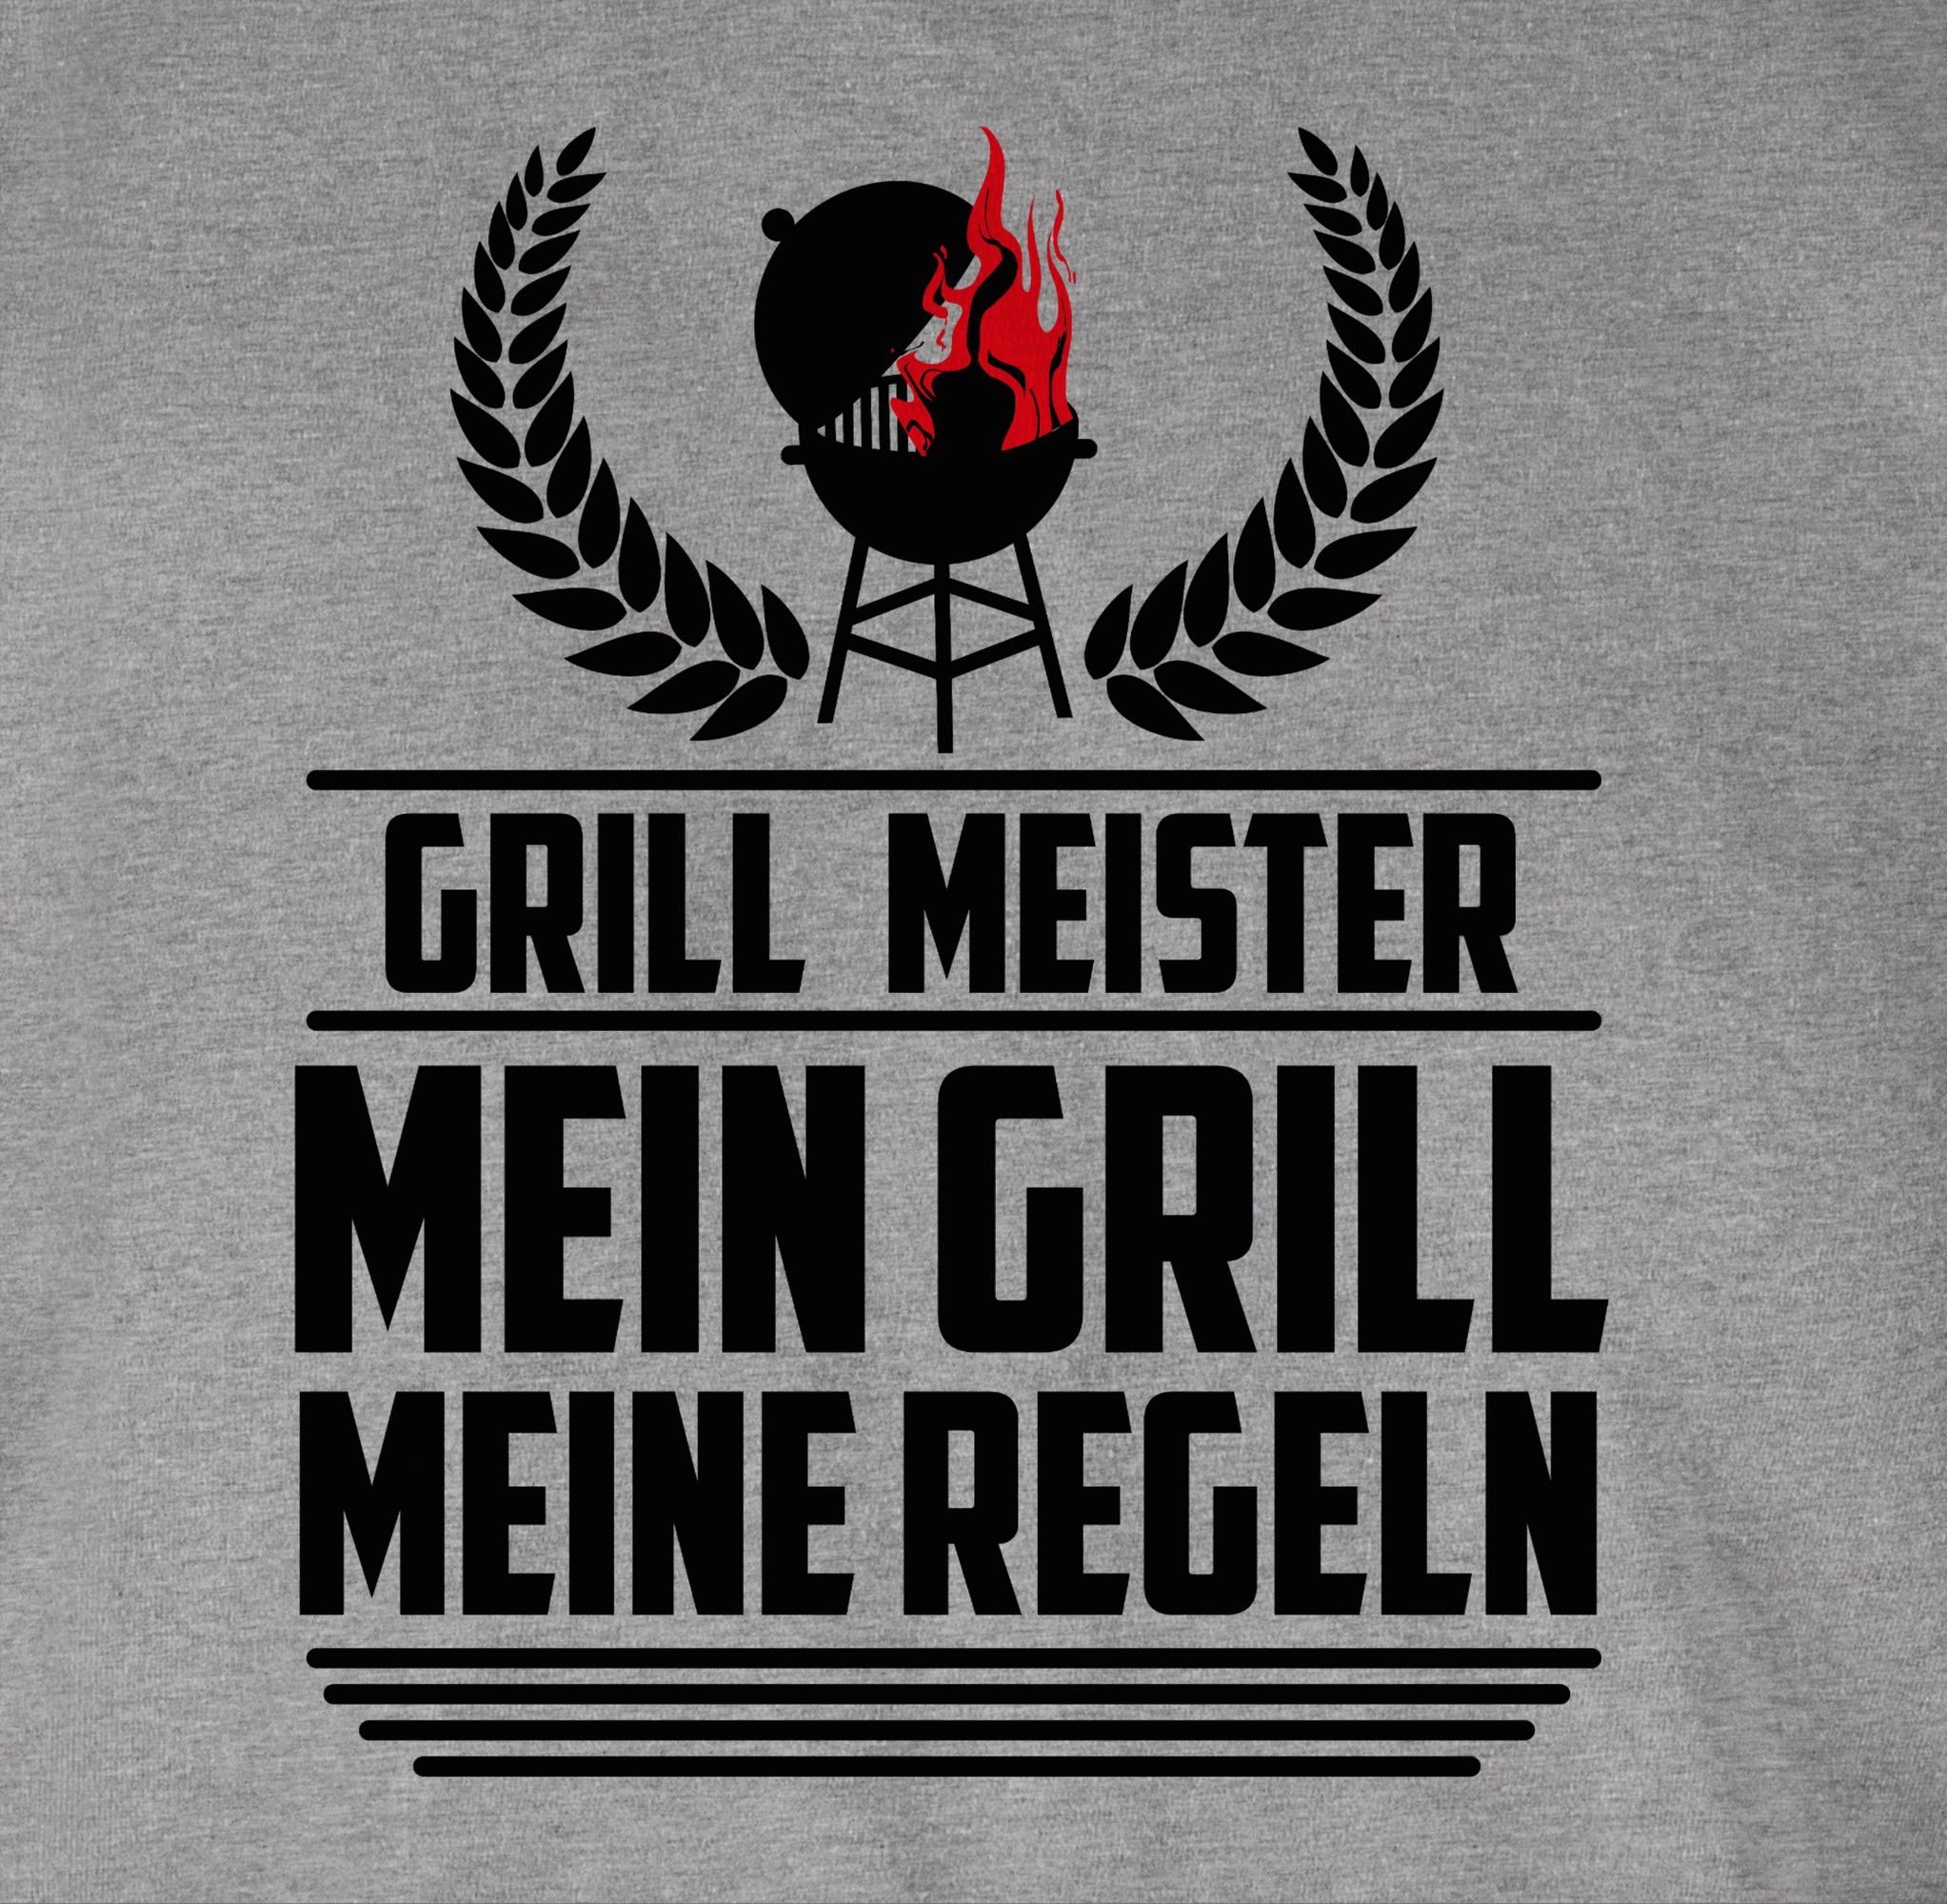 Shirtracer T-Shirt Grill schwarz Grillzubehör - & Grillen Grau Meister Geschenk meliert 2